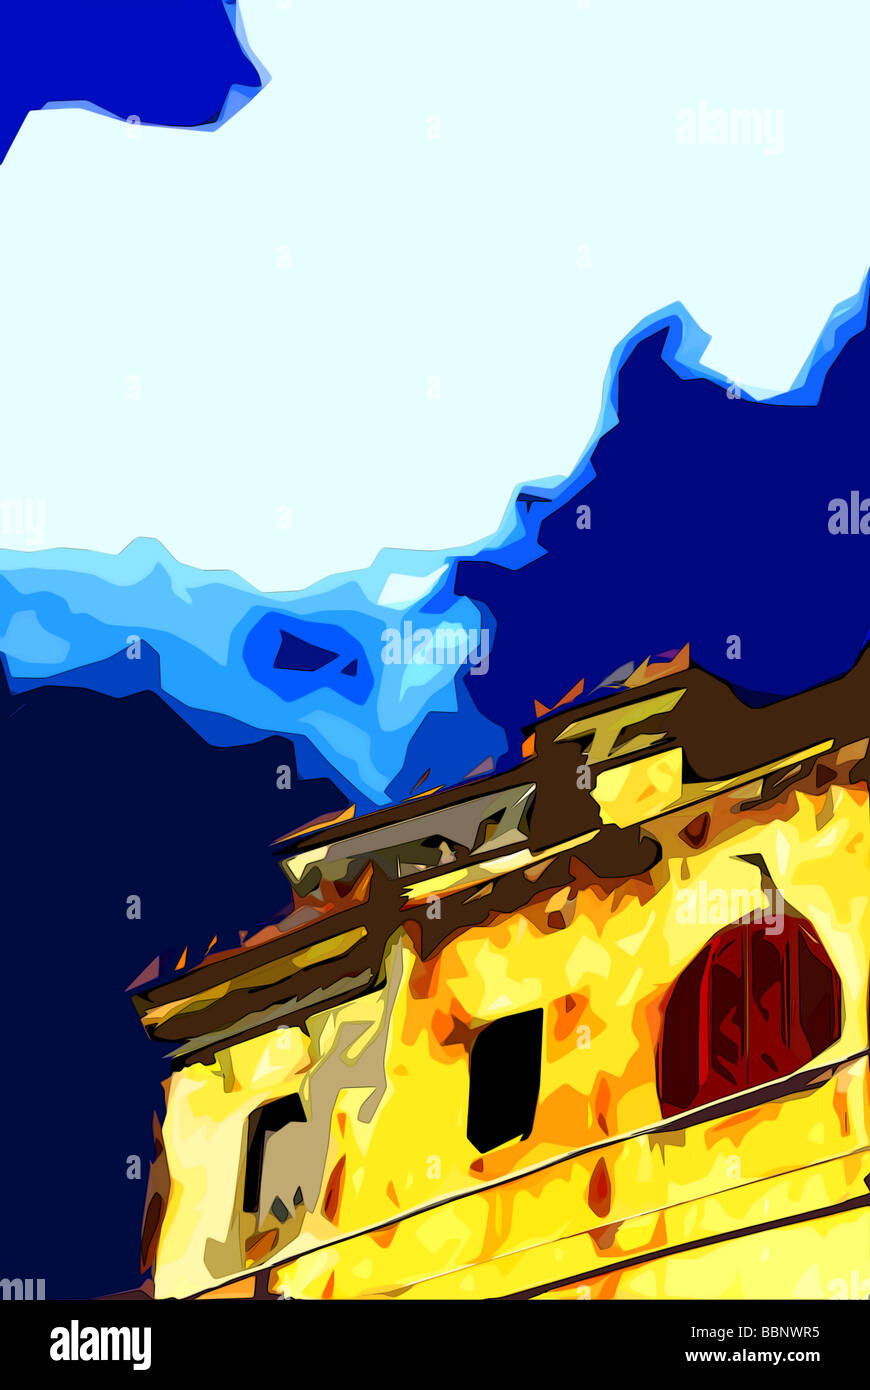 Cel-illustration d'un bâtiment en feu Banque D'Images